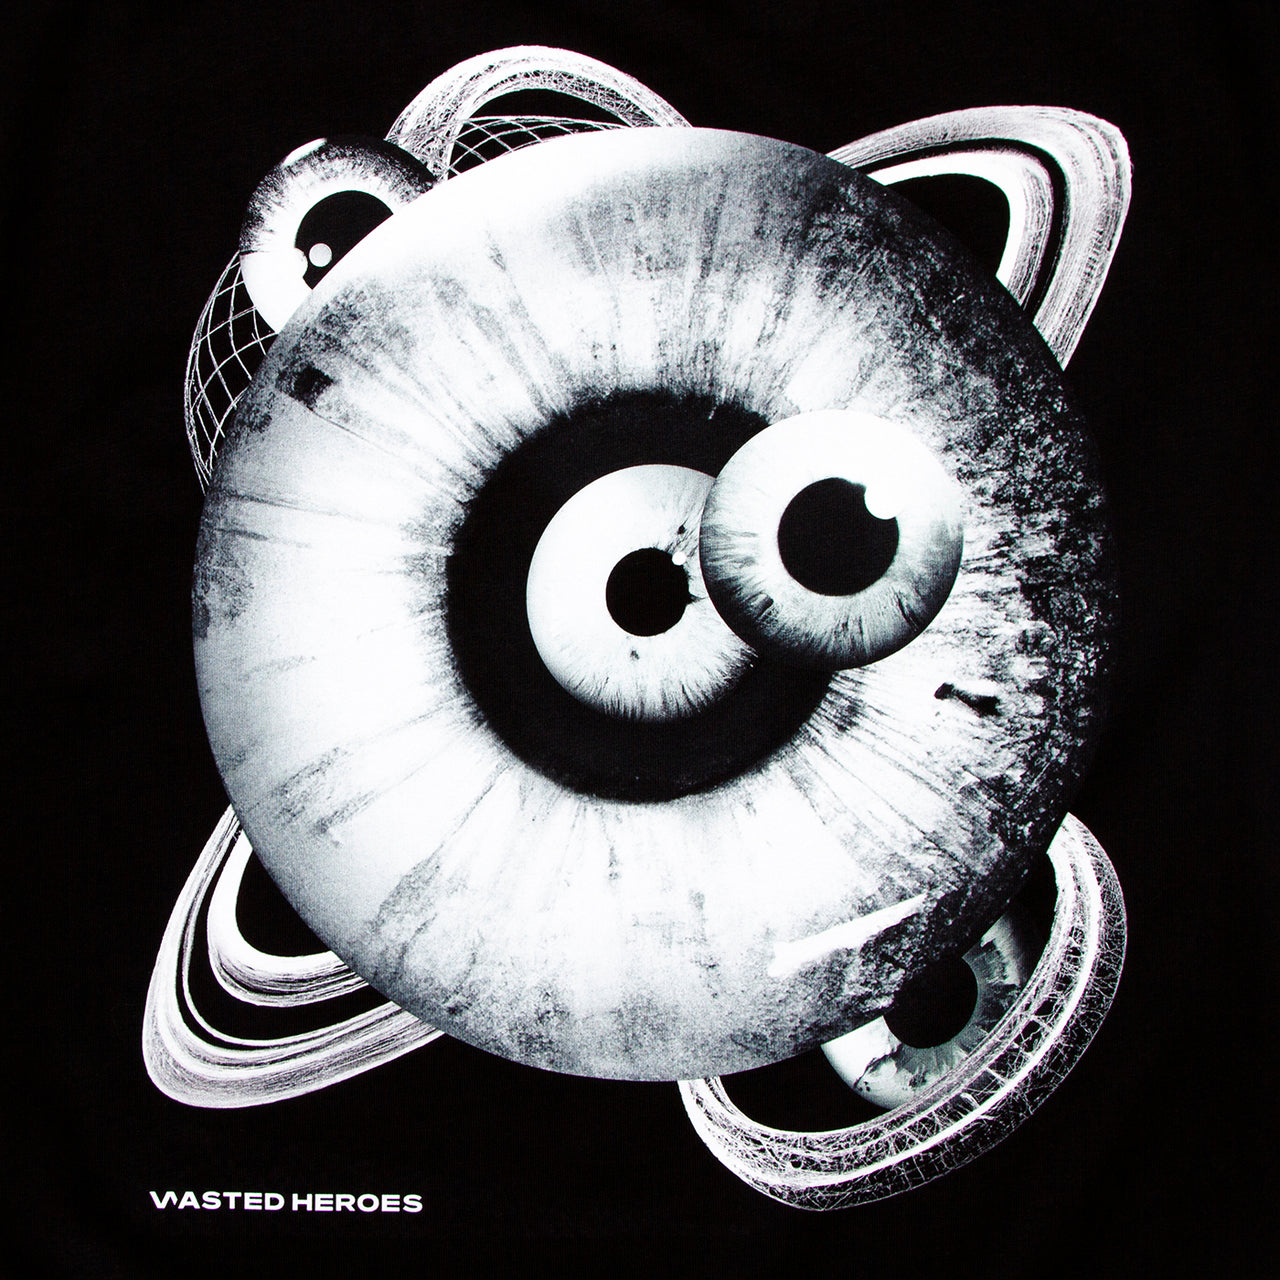 Orbital 001 Back Print - Tshirt - Black